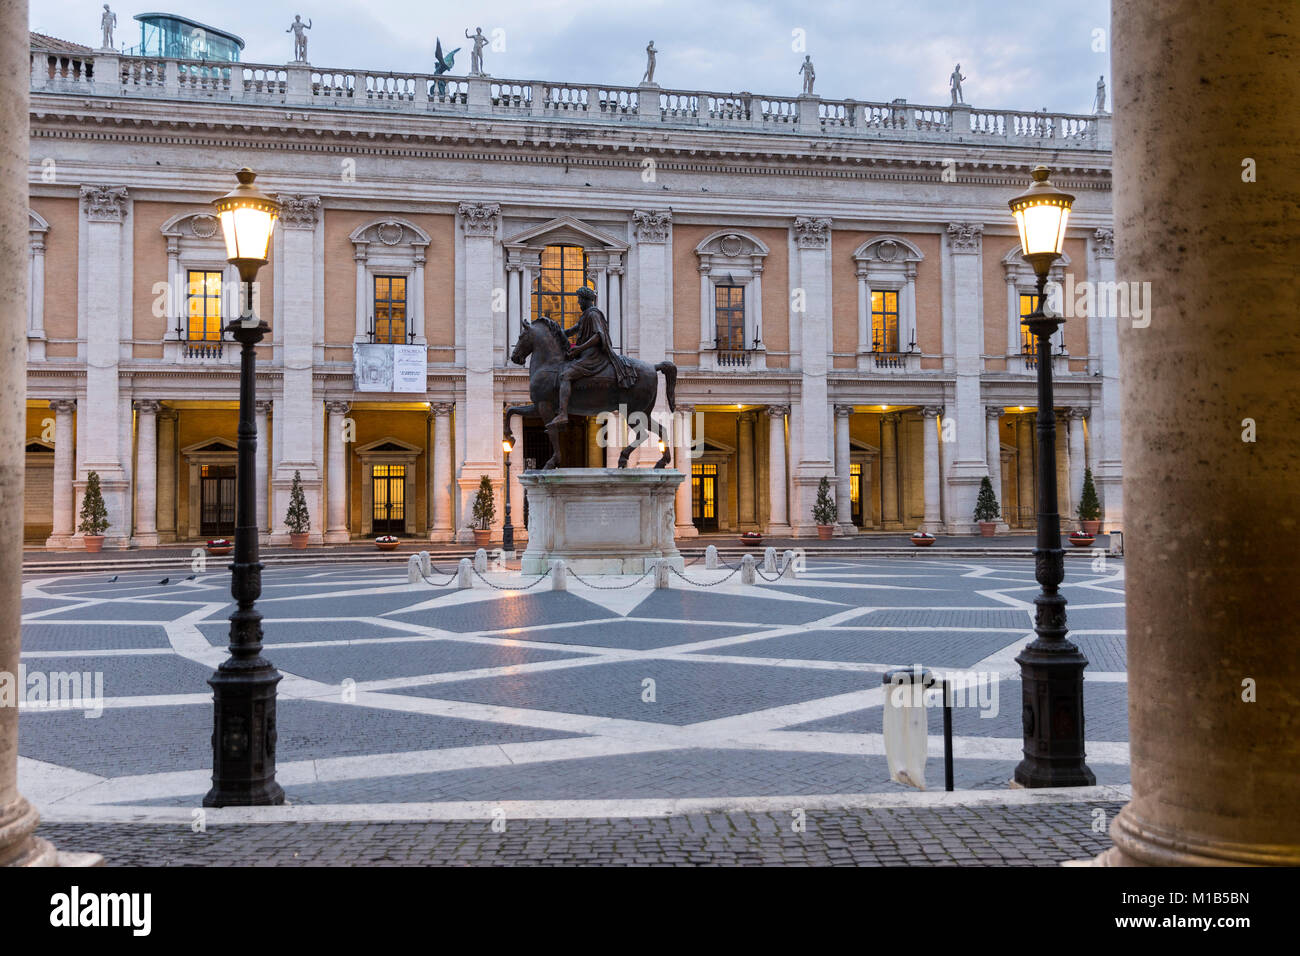 The ancient statue of Marcus Aurelius. Piazza del Campidoglio. Rome, Italy. Stock Photo